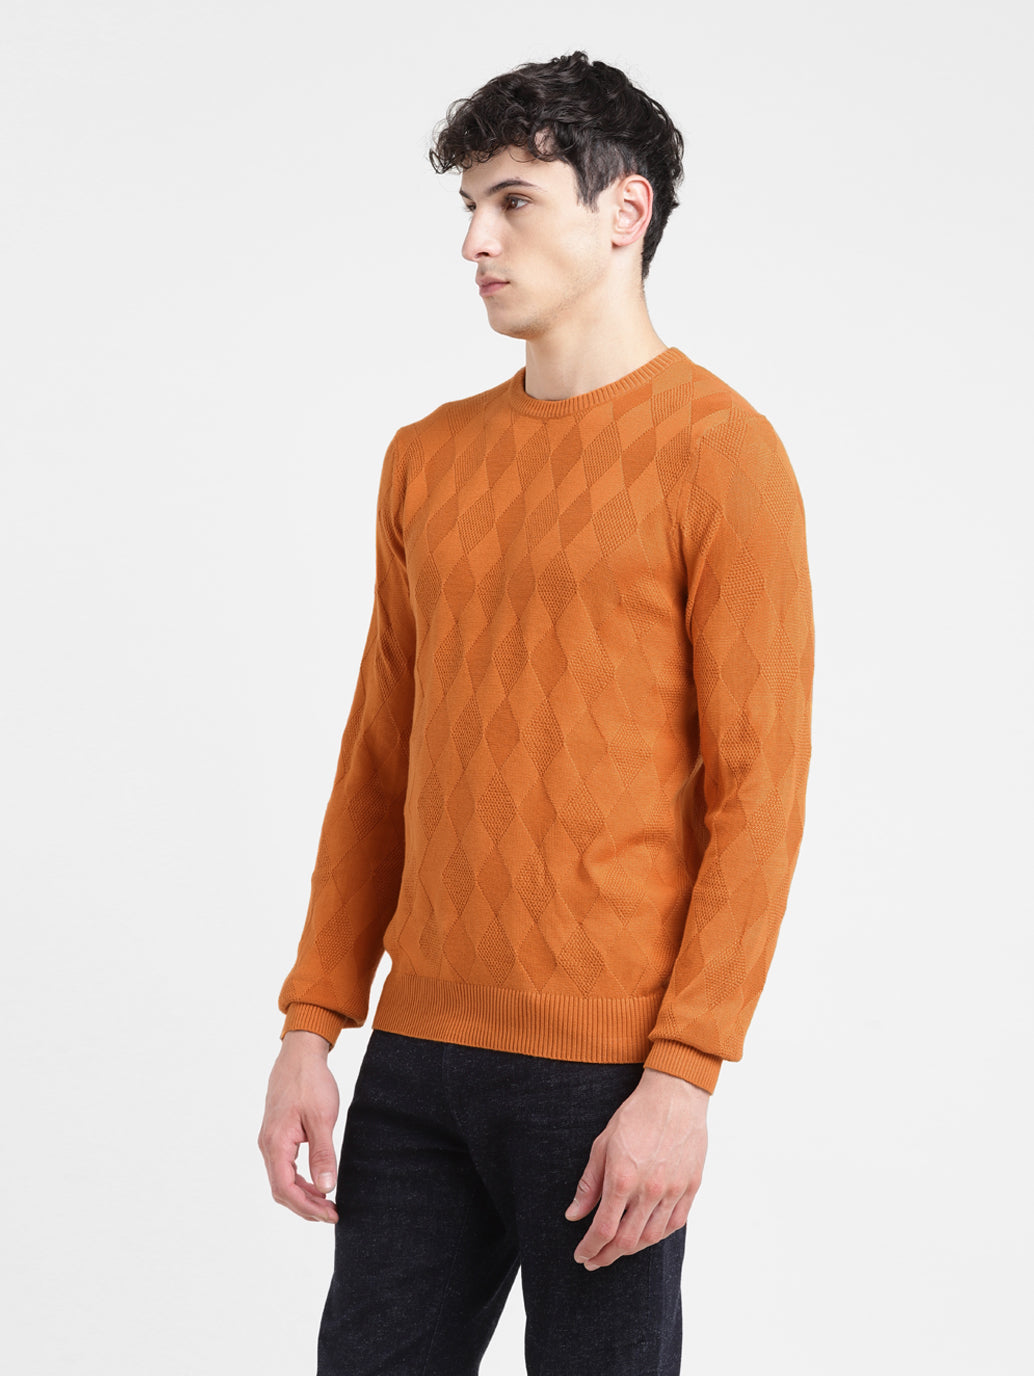 Men's Self Design Orange Crew Neck Sweater